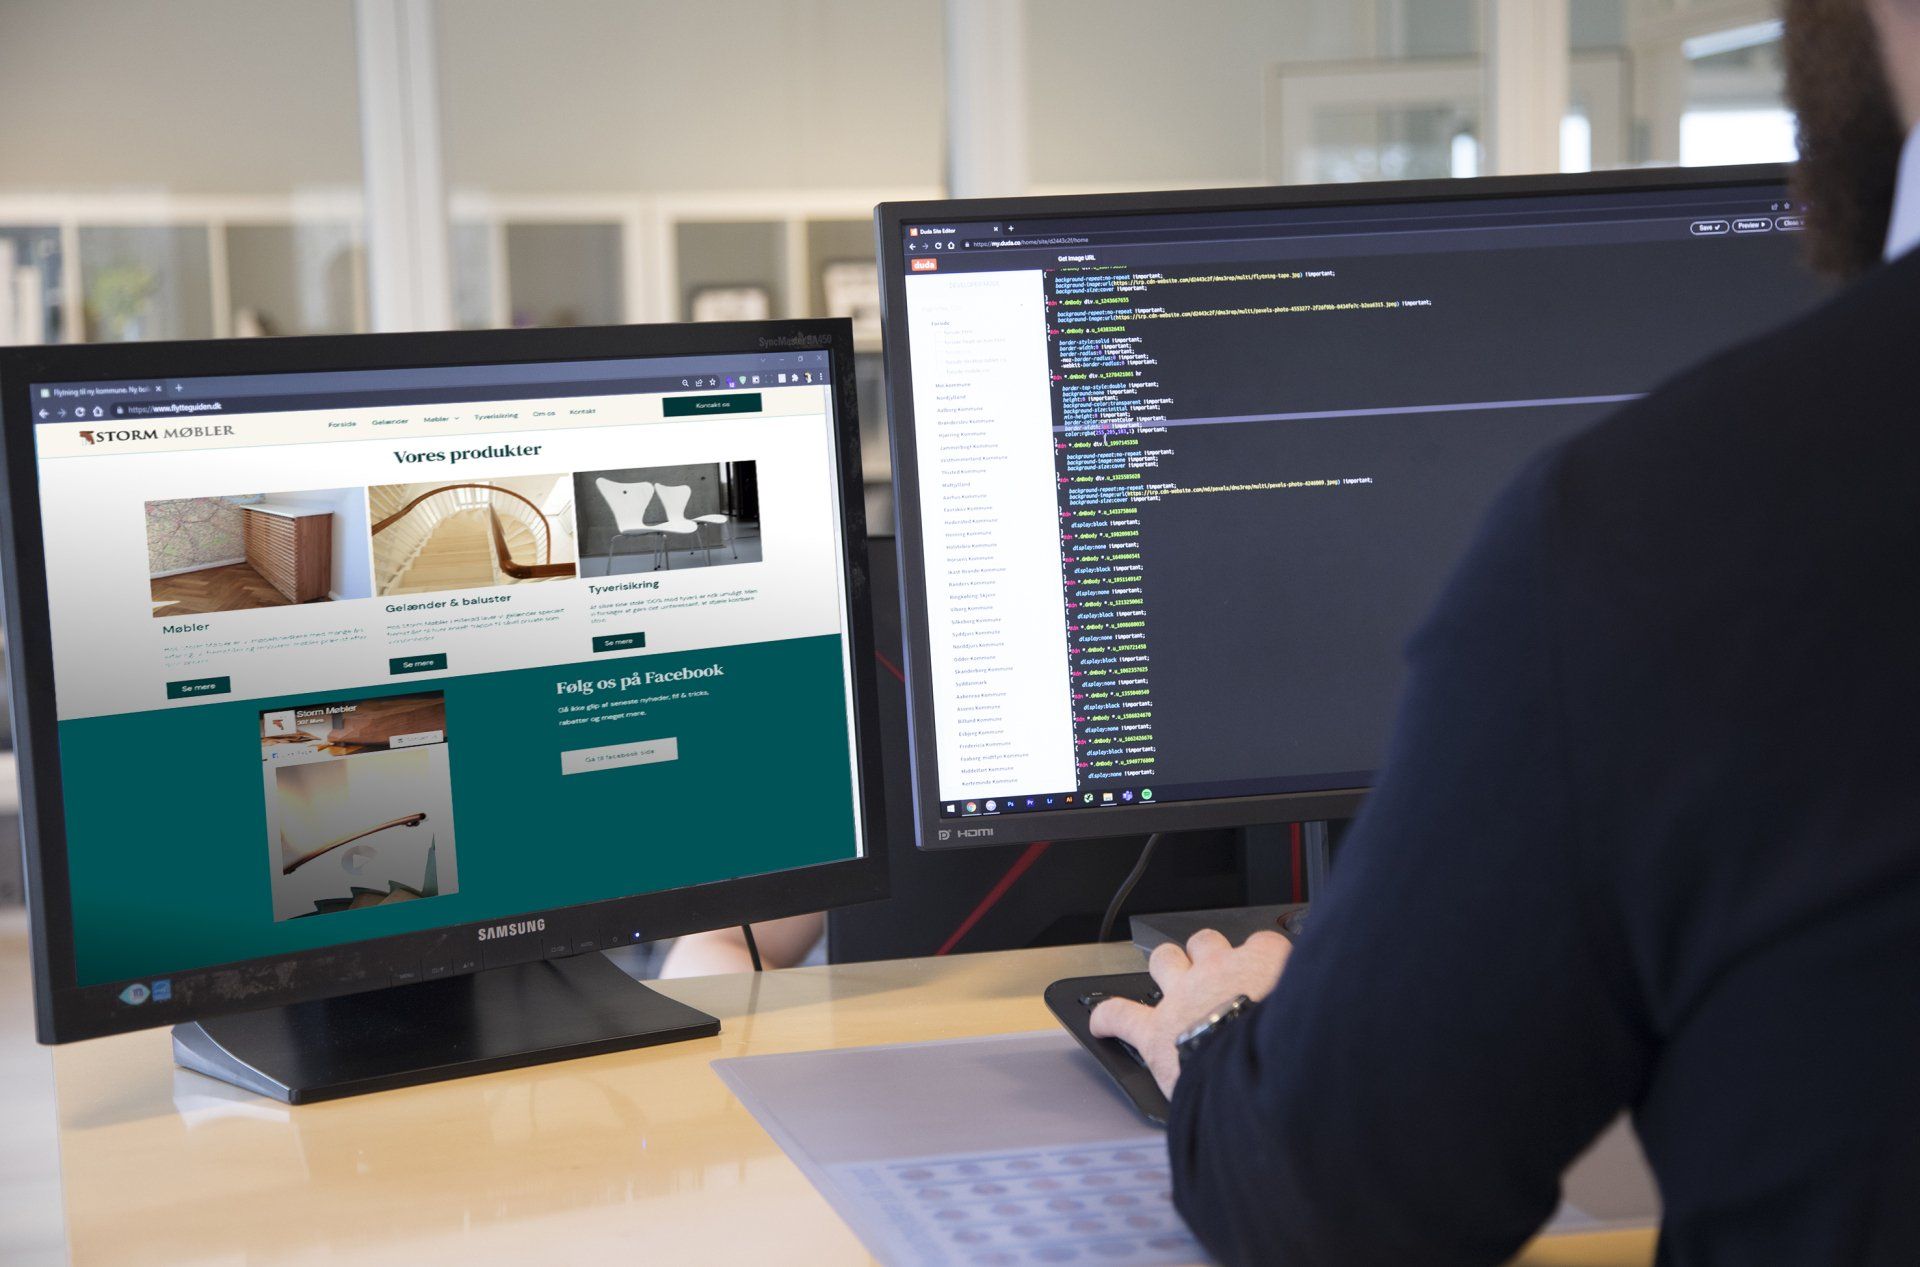 Et foto af en computerskærm med Storm Møblers hjemmeside og en computerskærm med koder på